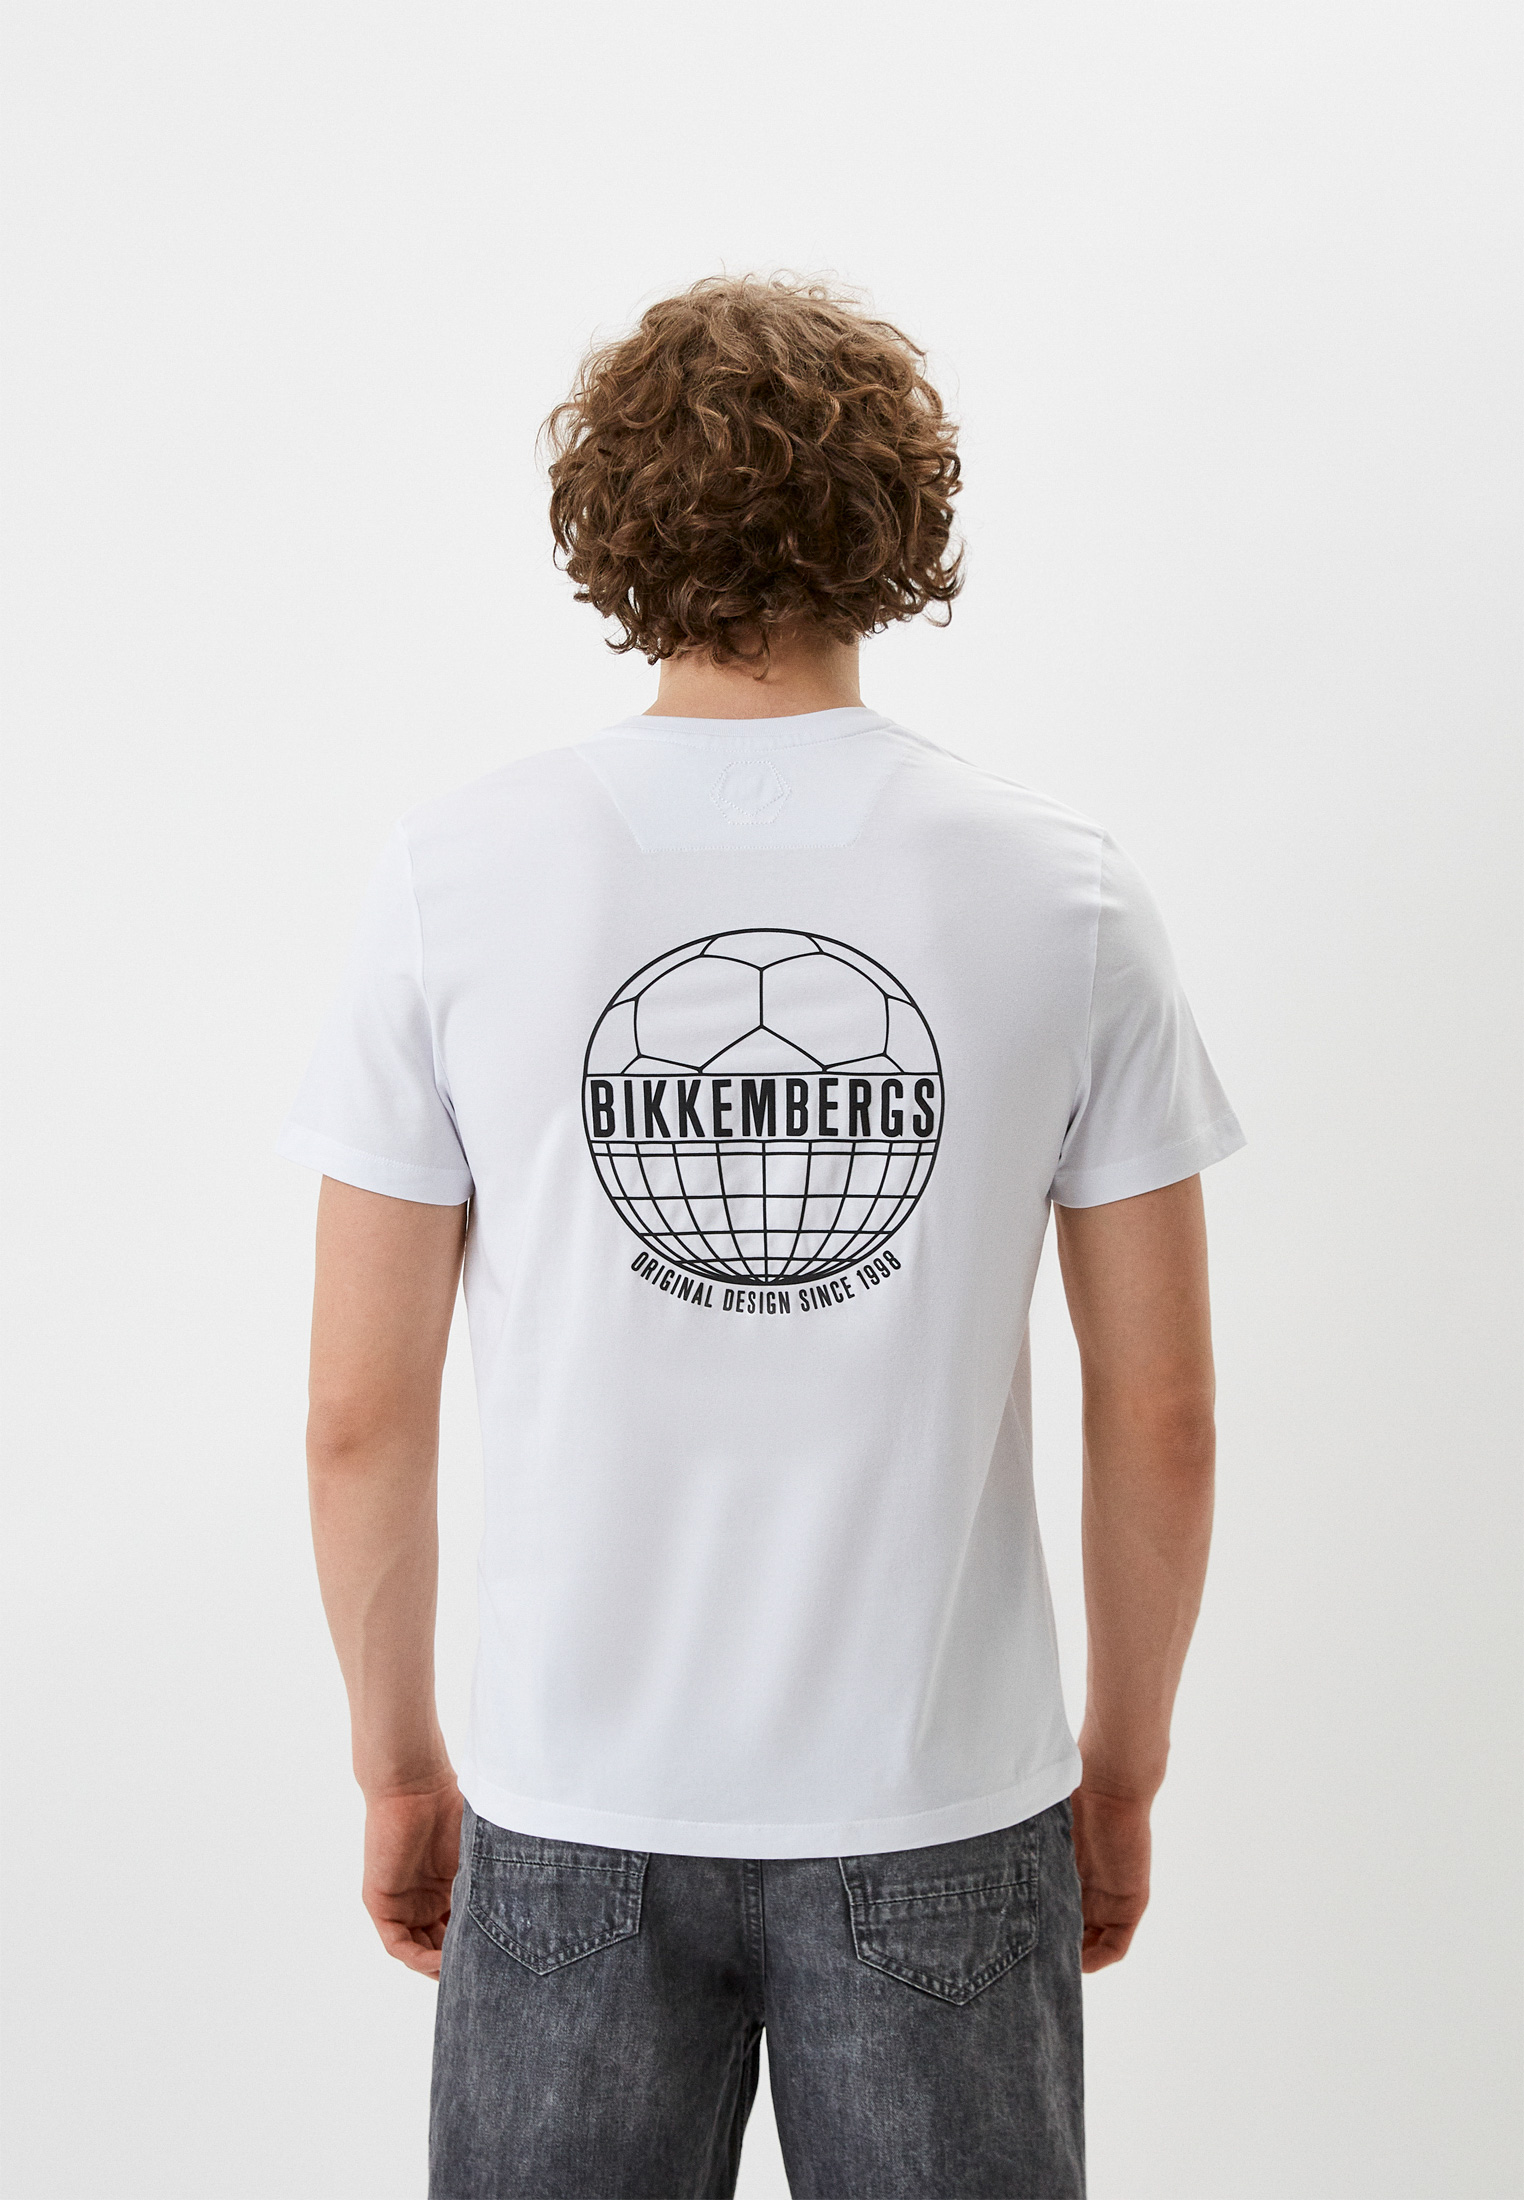 Мужская футболка Bikkembergs (Биккембергс) C 4 101 13 E 1811: изображение 7